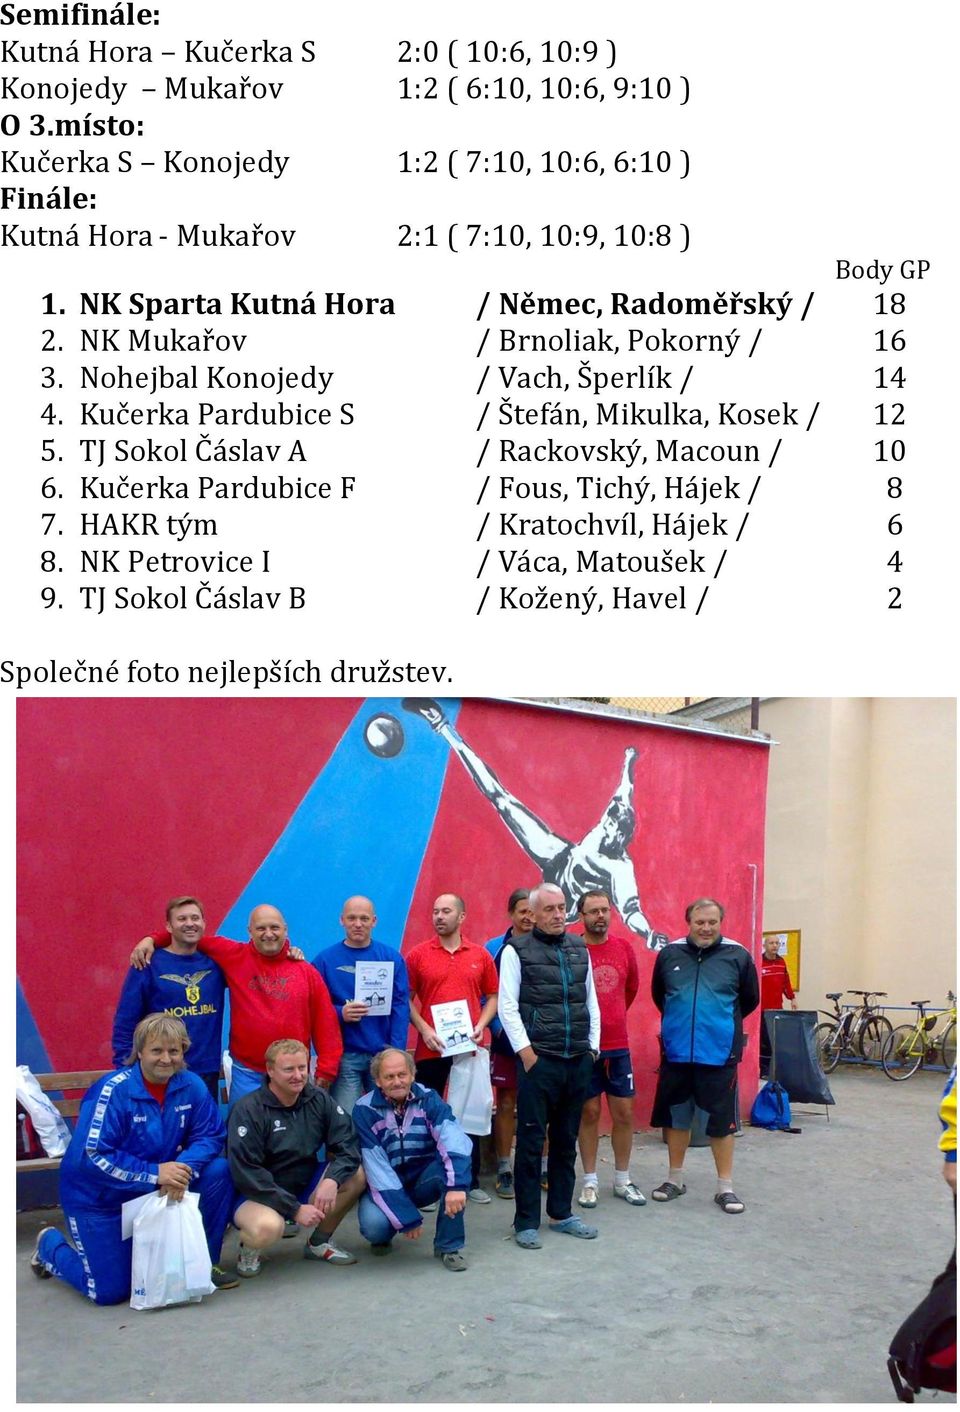 NK Sparta Kutná Hora / Němec, Radoměřský / 18 2. NK Mukařov / Brnoliak, Pokorný / 16 3. Nohejbal Konojedy / Vach, Šperlík / 14 4.